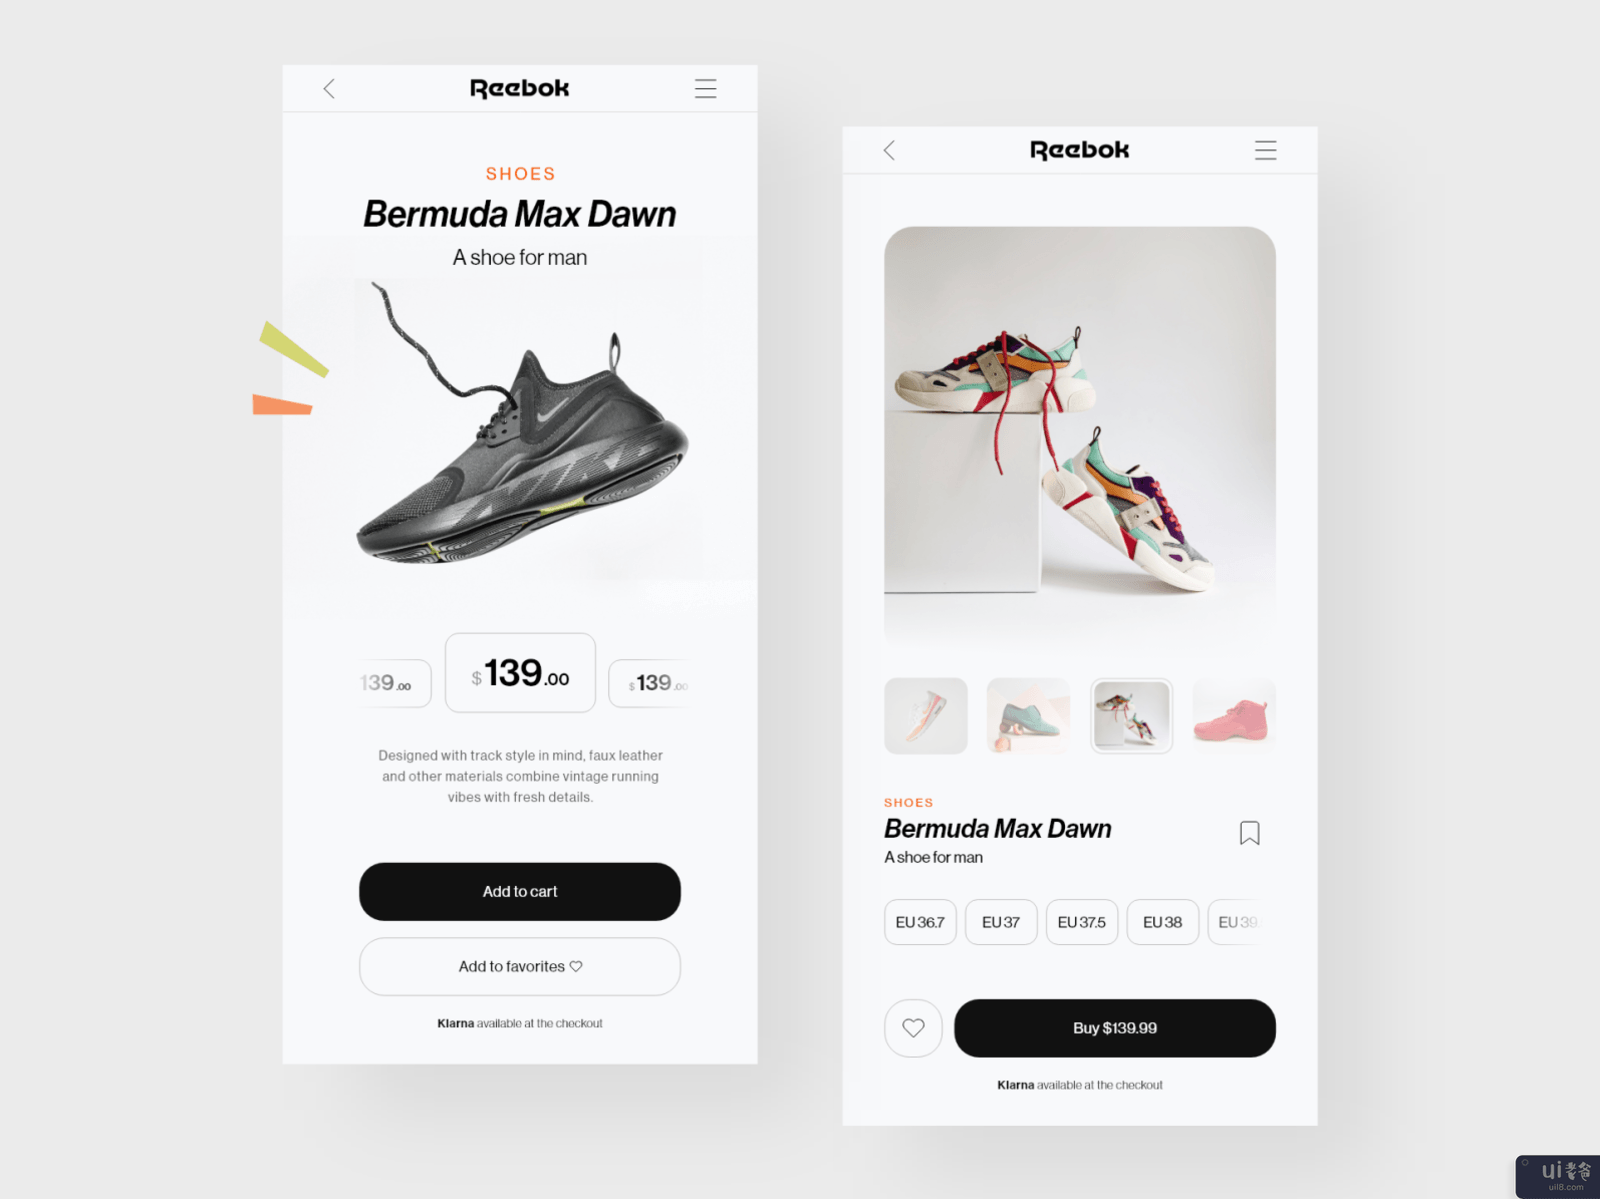 锐步 - 购物应用程序设计(Reebok - Shopping App Design)插图